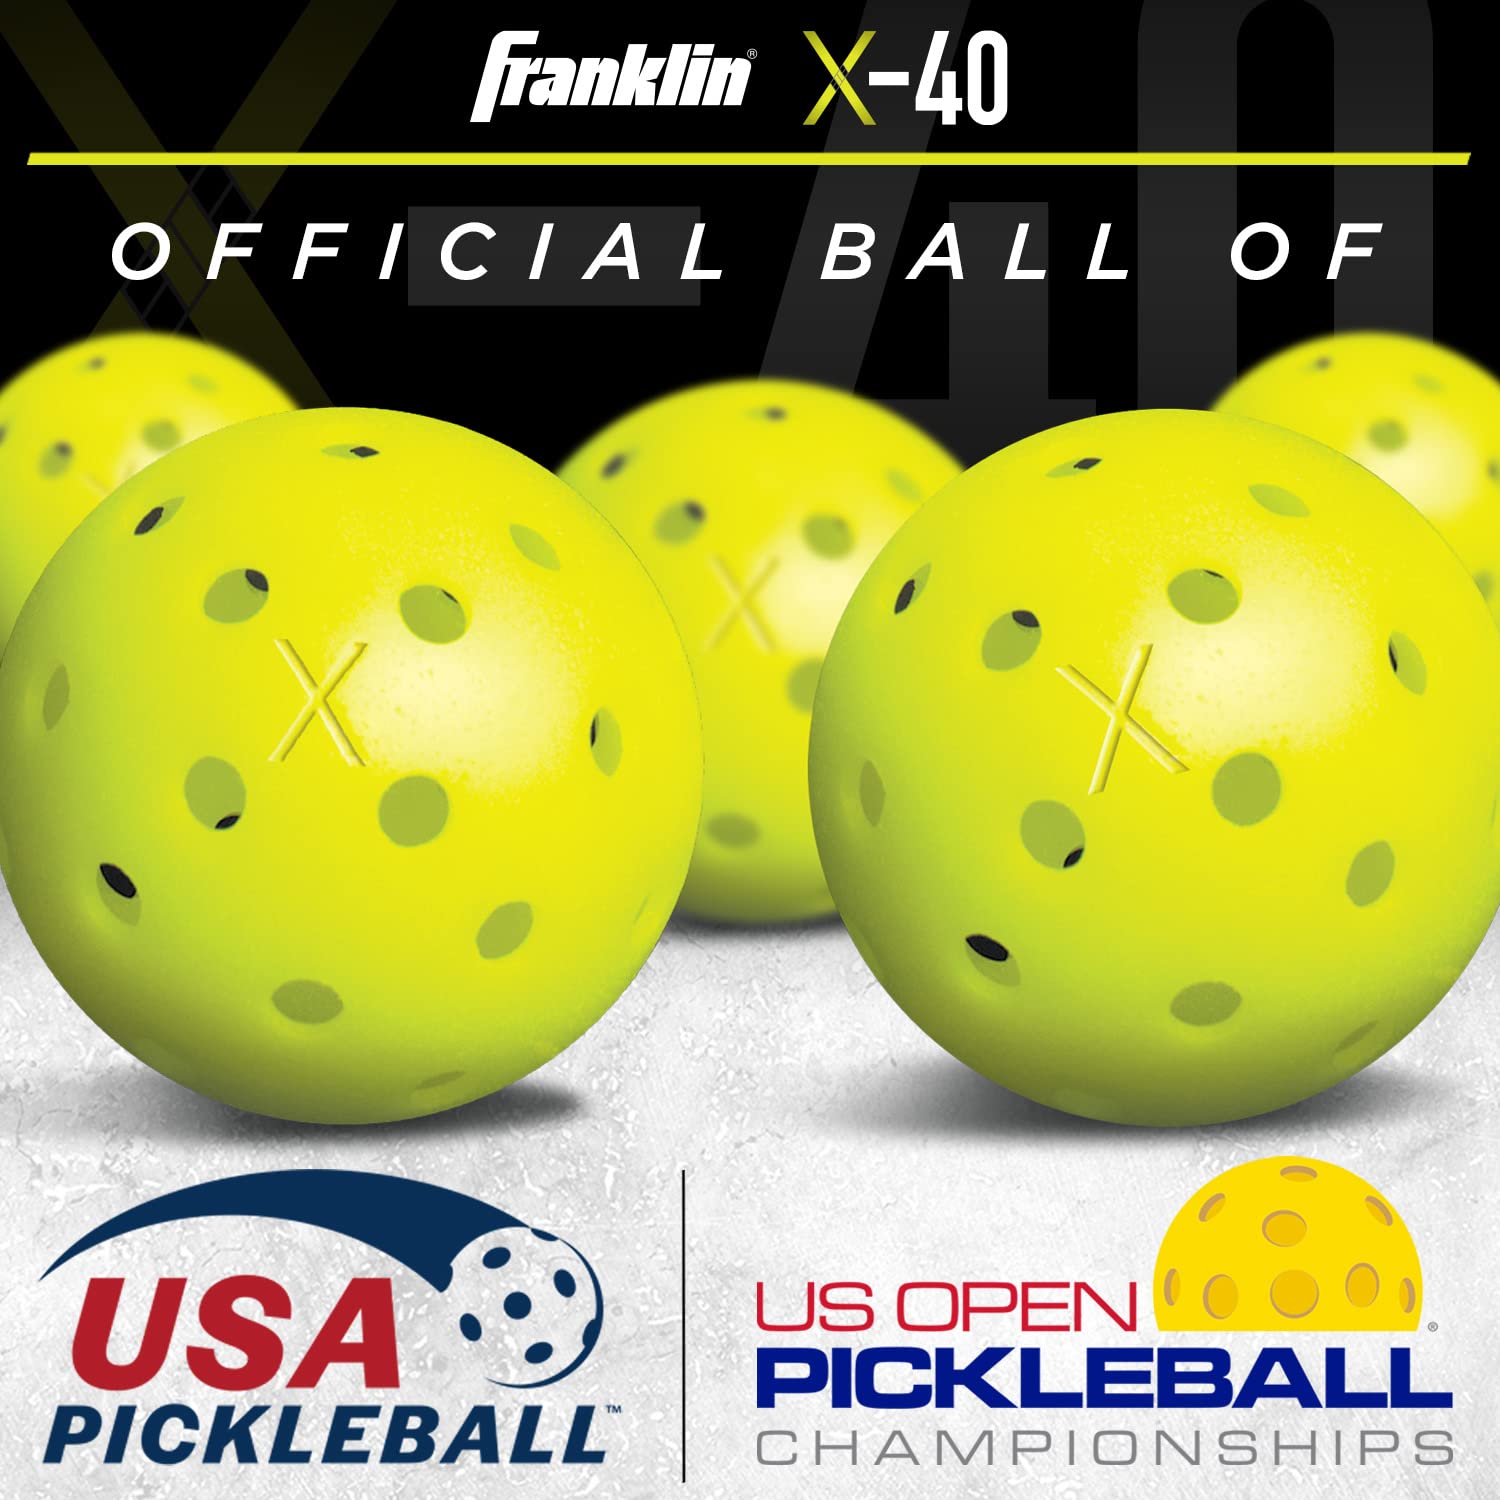 Franklin Sports Outdoor Pickleballs - X-40 Pickleball Balls - USA Pickleball (USAPA) Approved - Official US Open Ball - 3 Packs, 12 Packs, 36 Pickleball Buckets, 100 + 400 Bulk Packs of Pickleballs